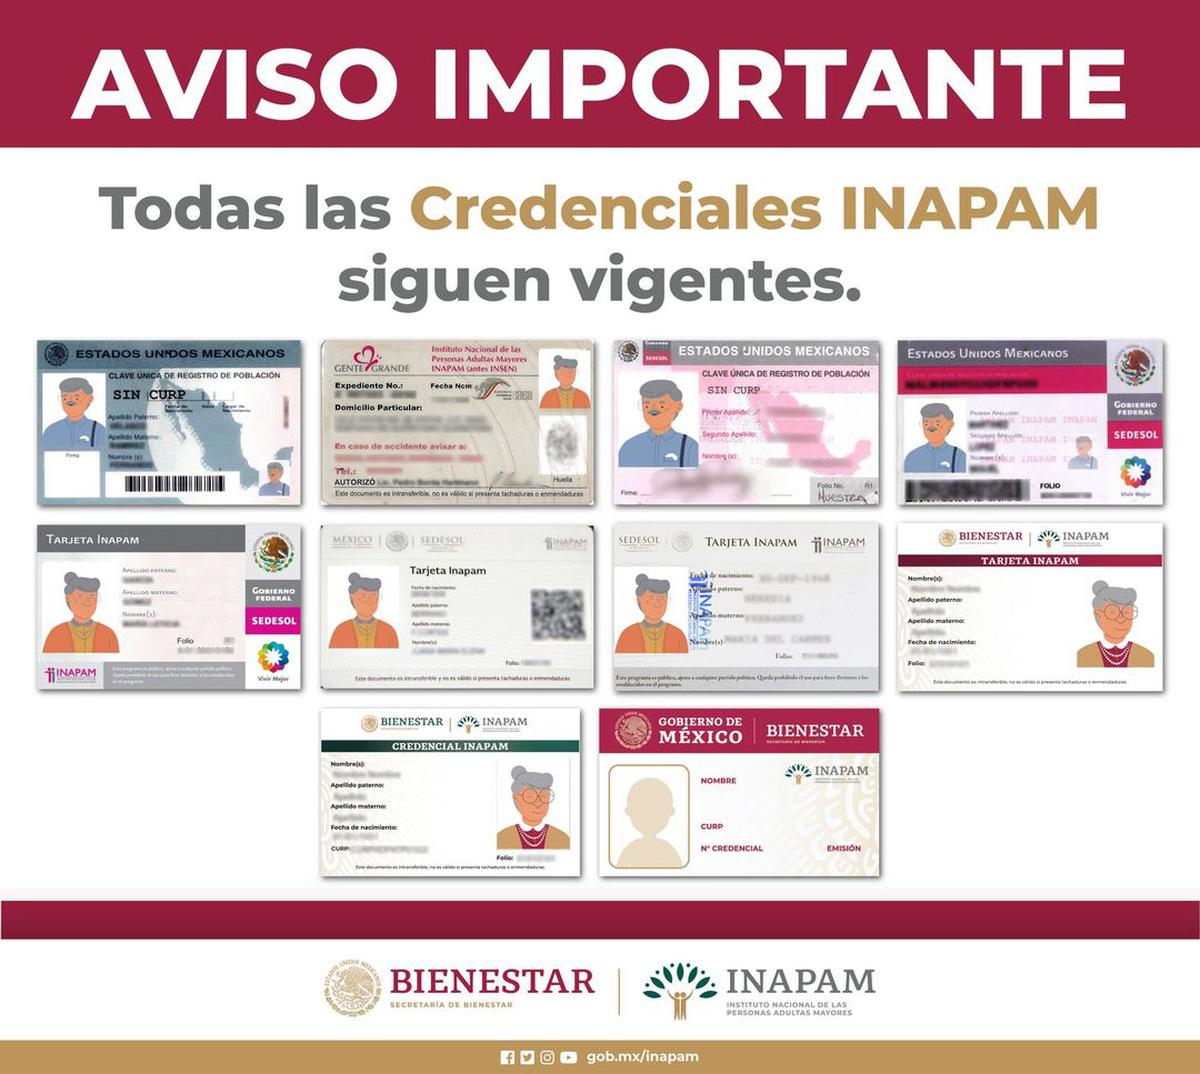 Tarjetas INAPAM | El gobierno mexicano confirma que todas las credenciales emitidas en años anteriores y actuales siguen siendo válidas. Fuente: Instagram @inapam_bienestar